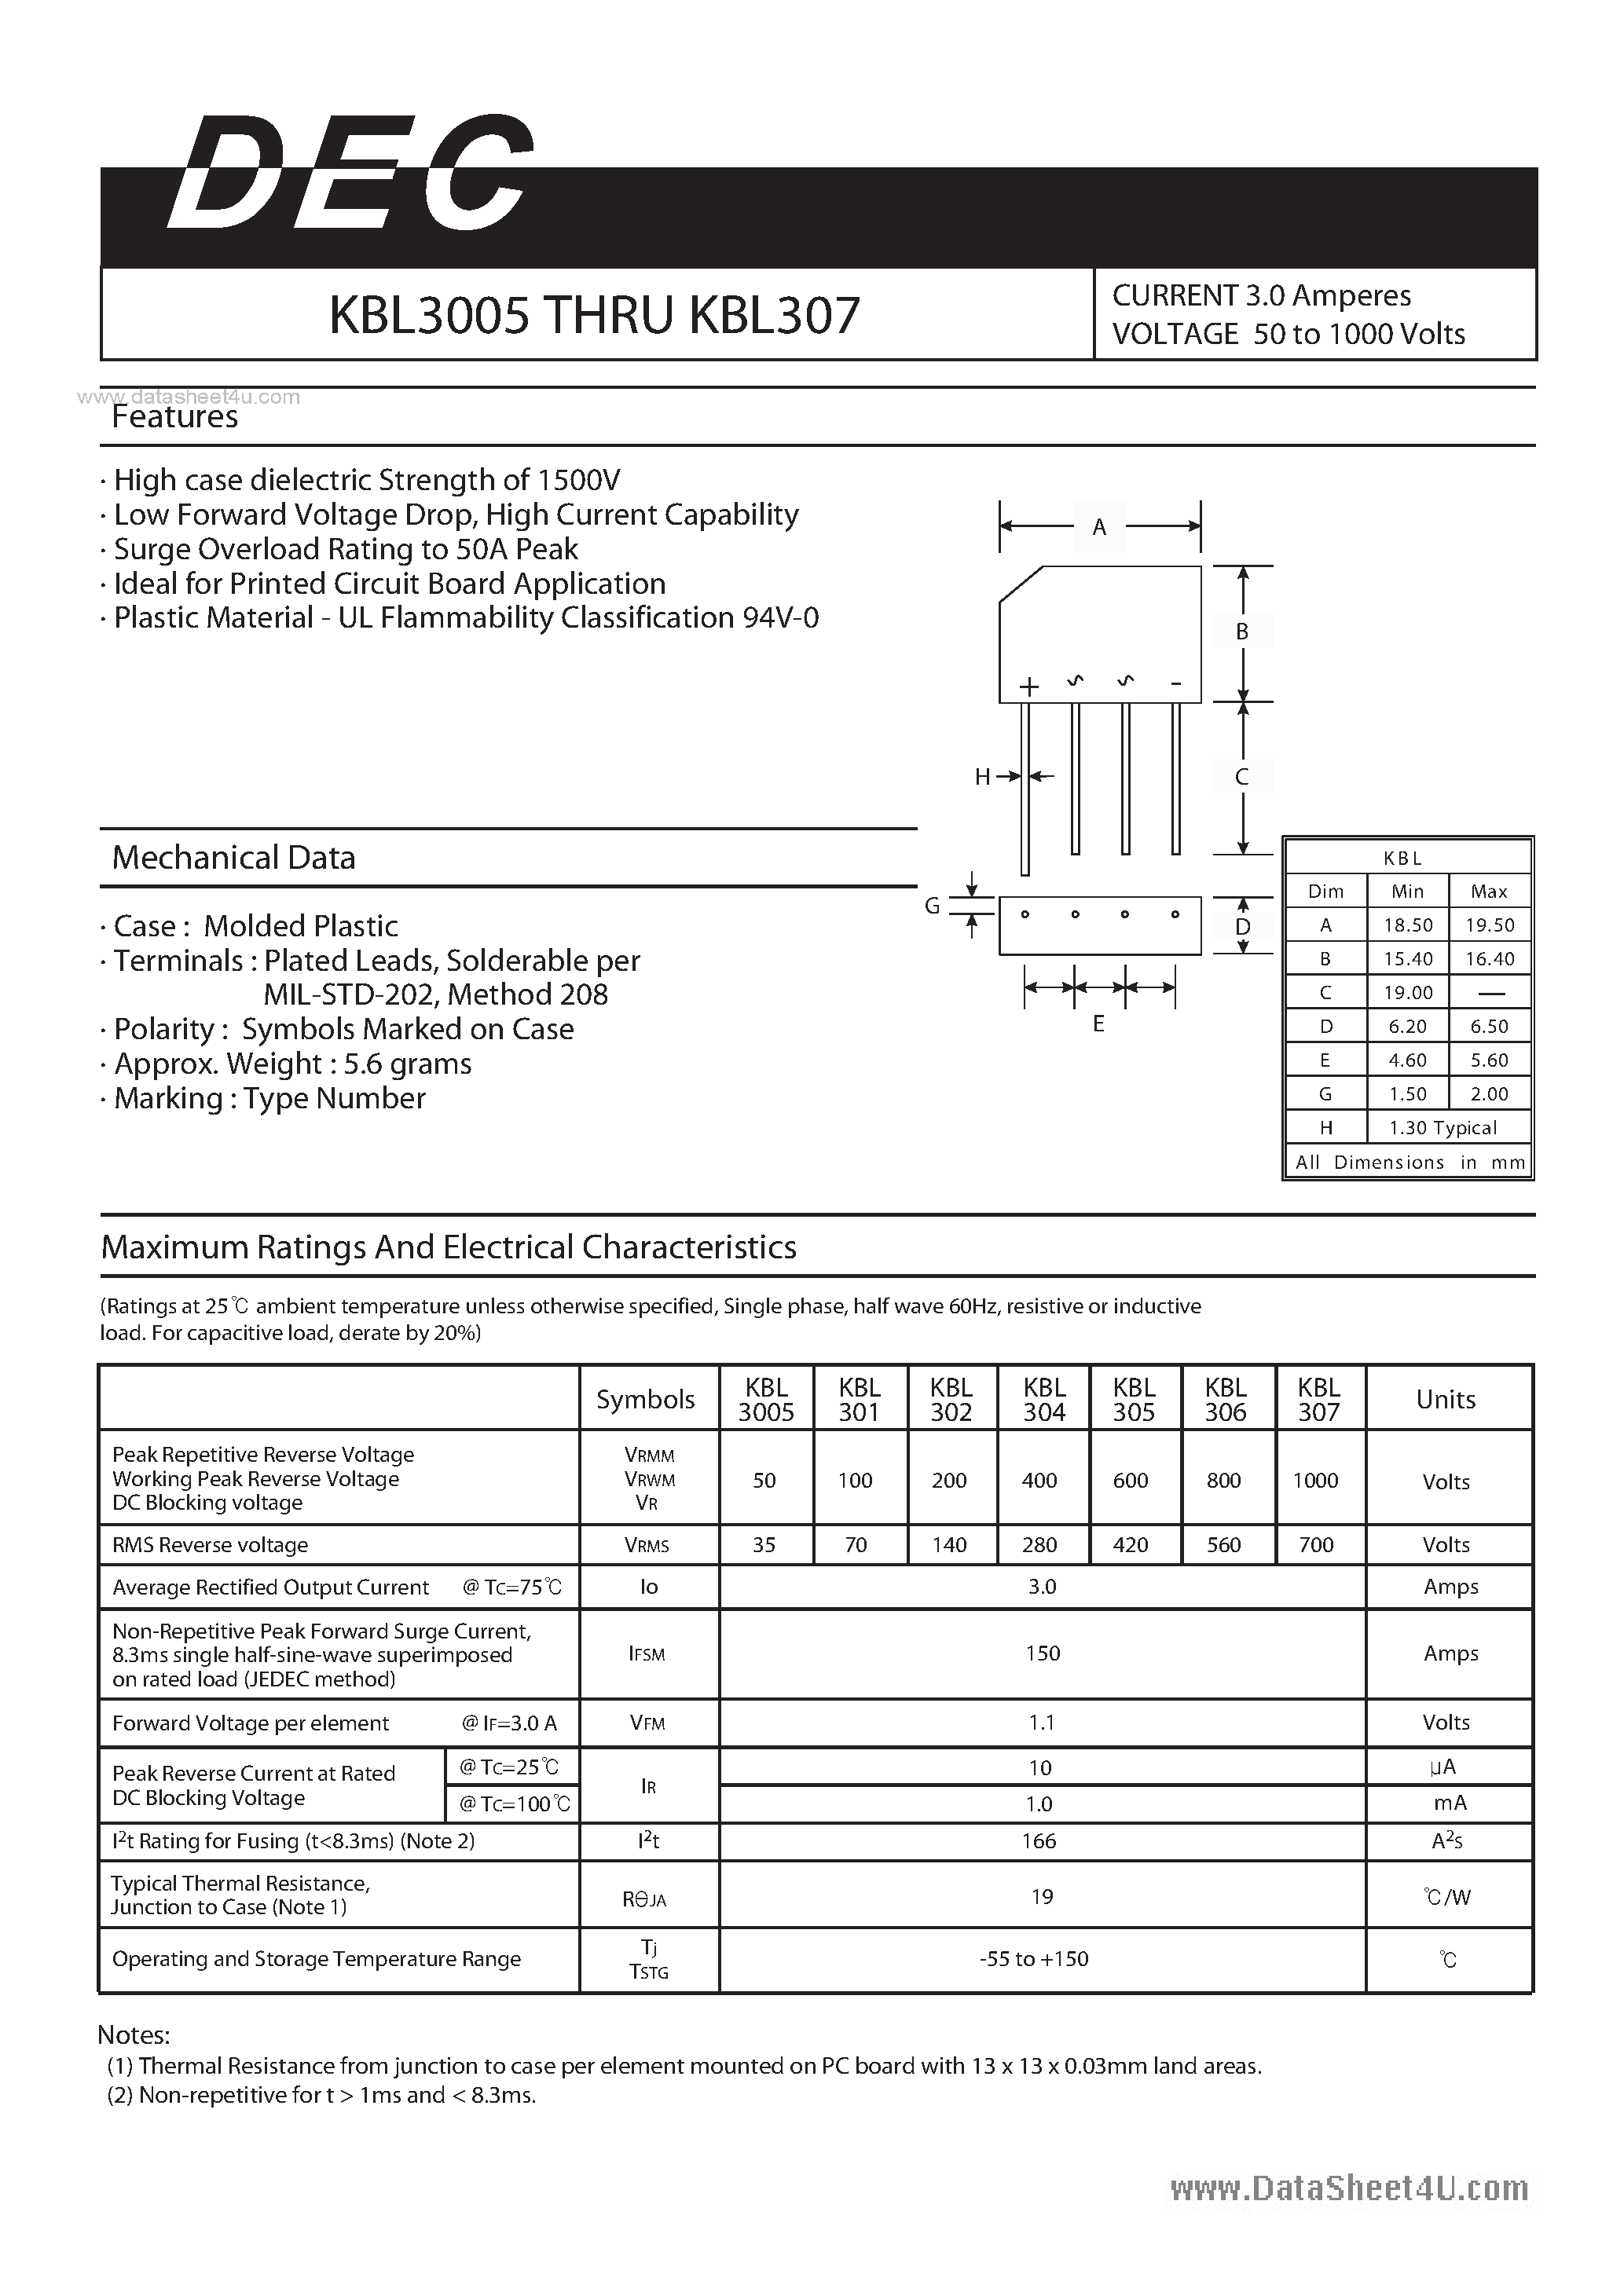 Datasheet KBL3005 - (KBL3005 - KBL307) CURRENT 3.0 Amperes VOLTAGE 50 to 1000 Volts page 1